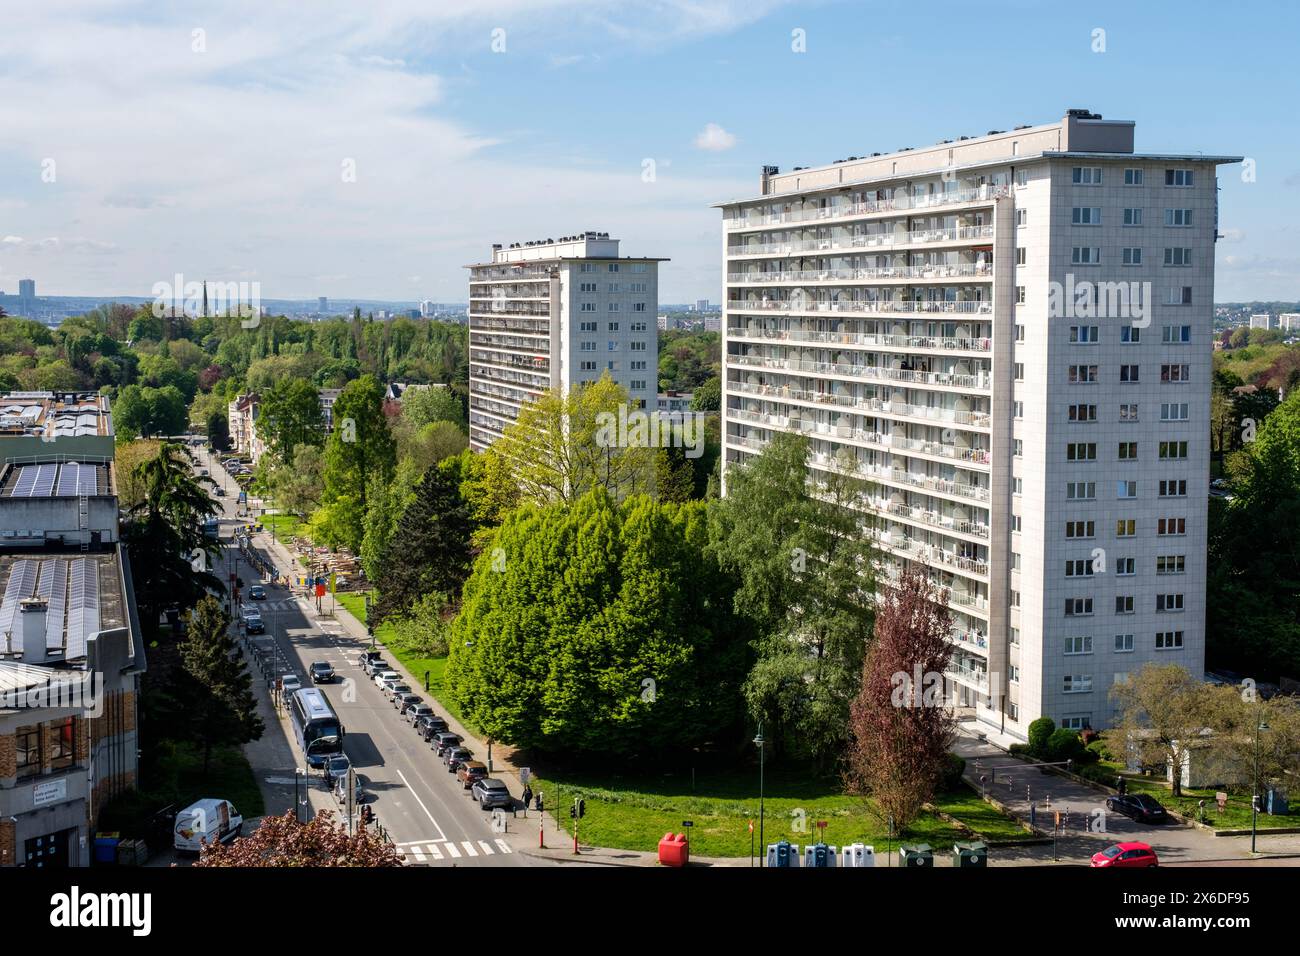 Immeubles d'appartements à la limite de Laeken et Neder-over-Hembeek | Apartment buildings on the border of Laeken and Neder-over-Hembeek Stock Photo